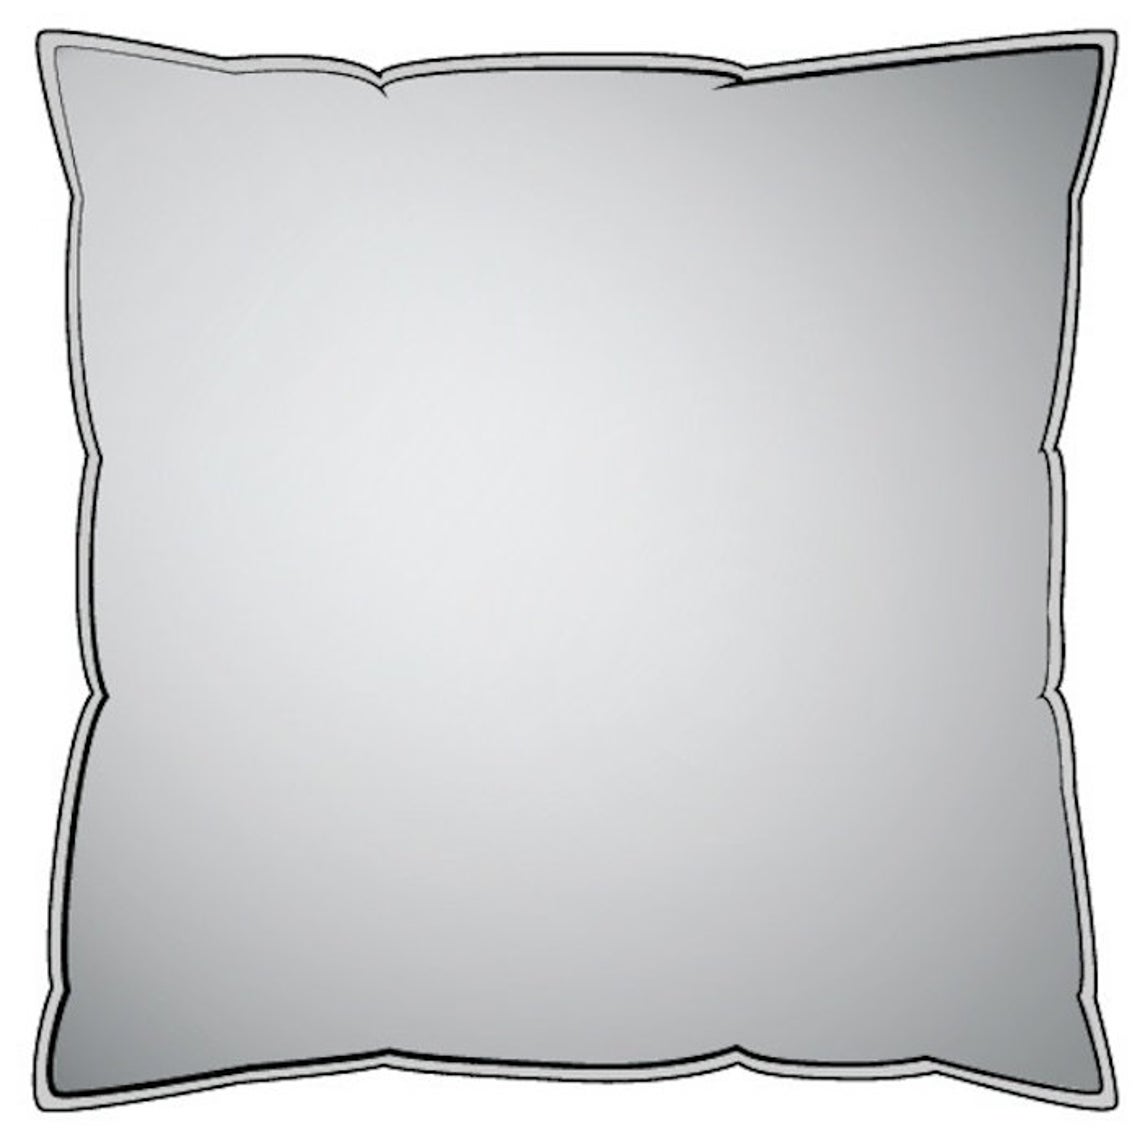 decorative pillows in anderson monarch orange buffalo check plaid